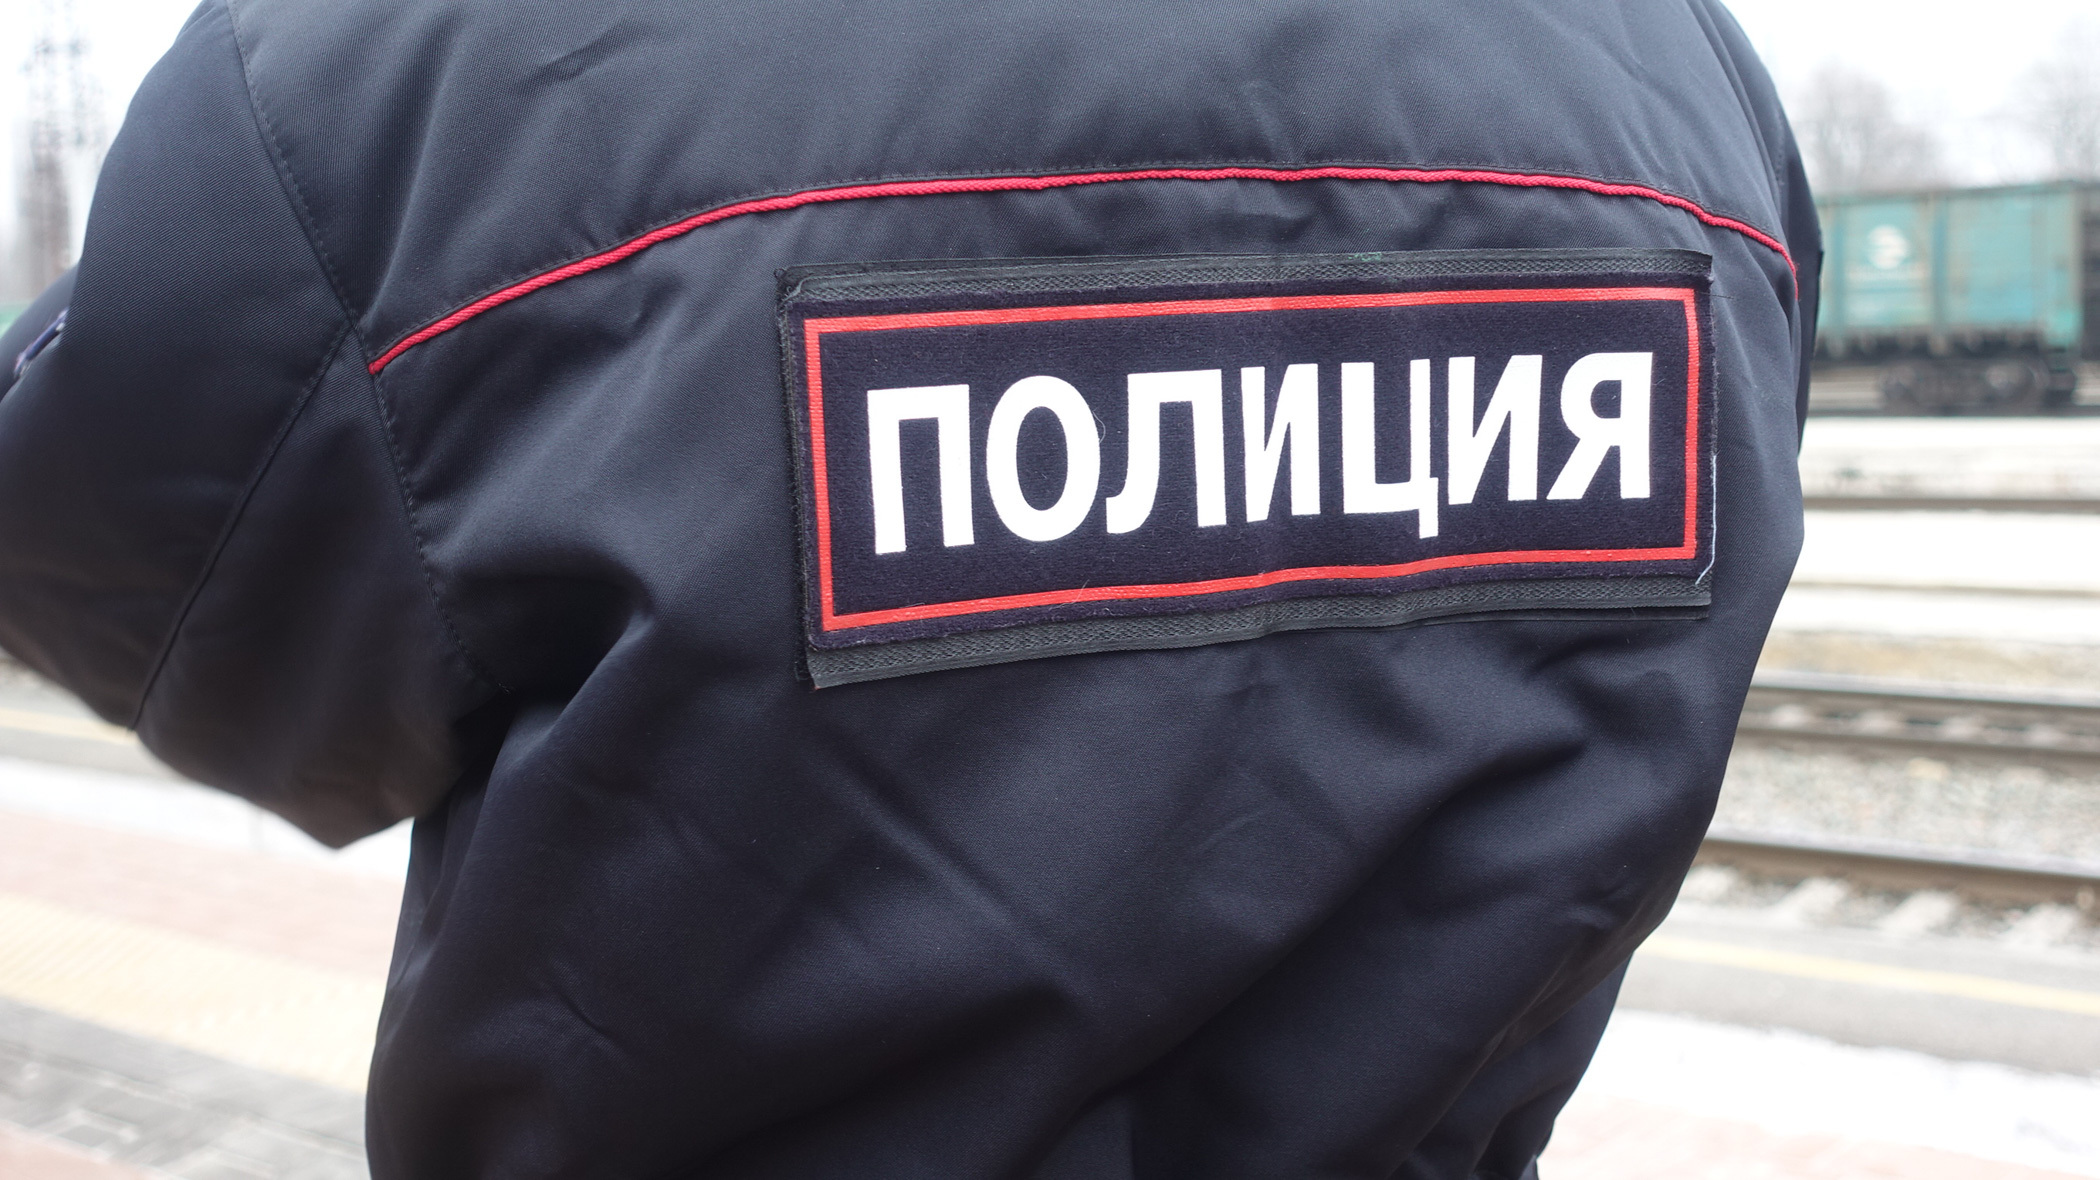 Тоболяки вынесли под одеждой из магазина алкоголь на 160 тысяч рублей